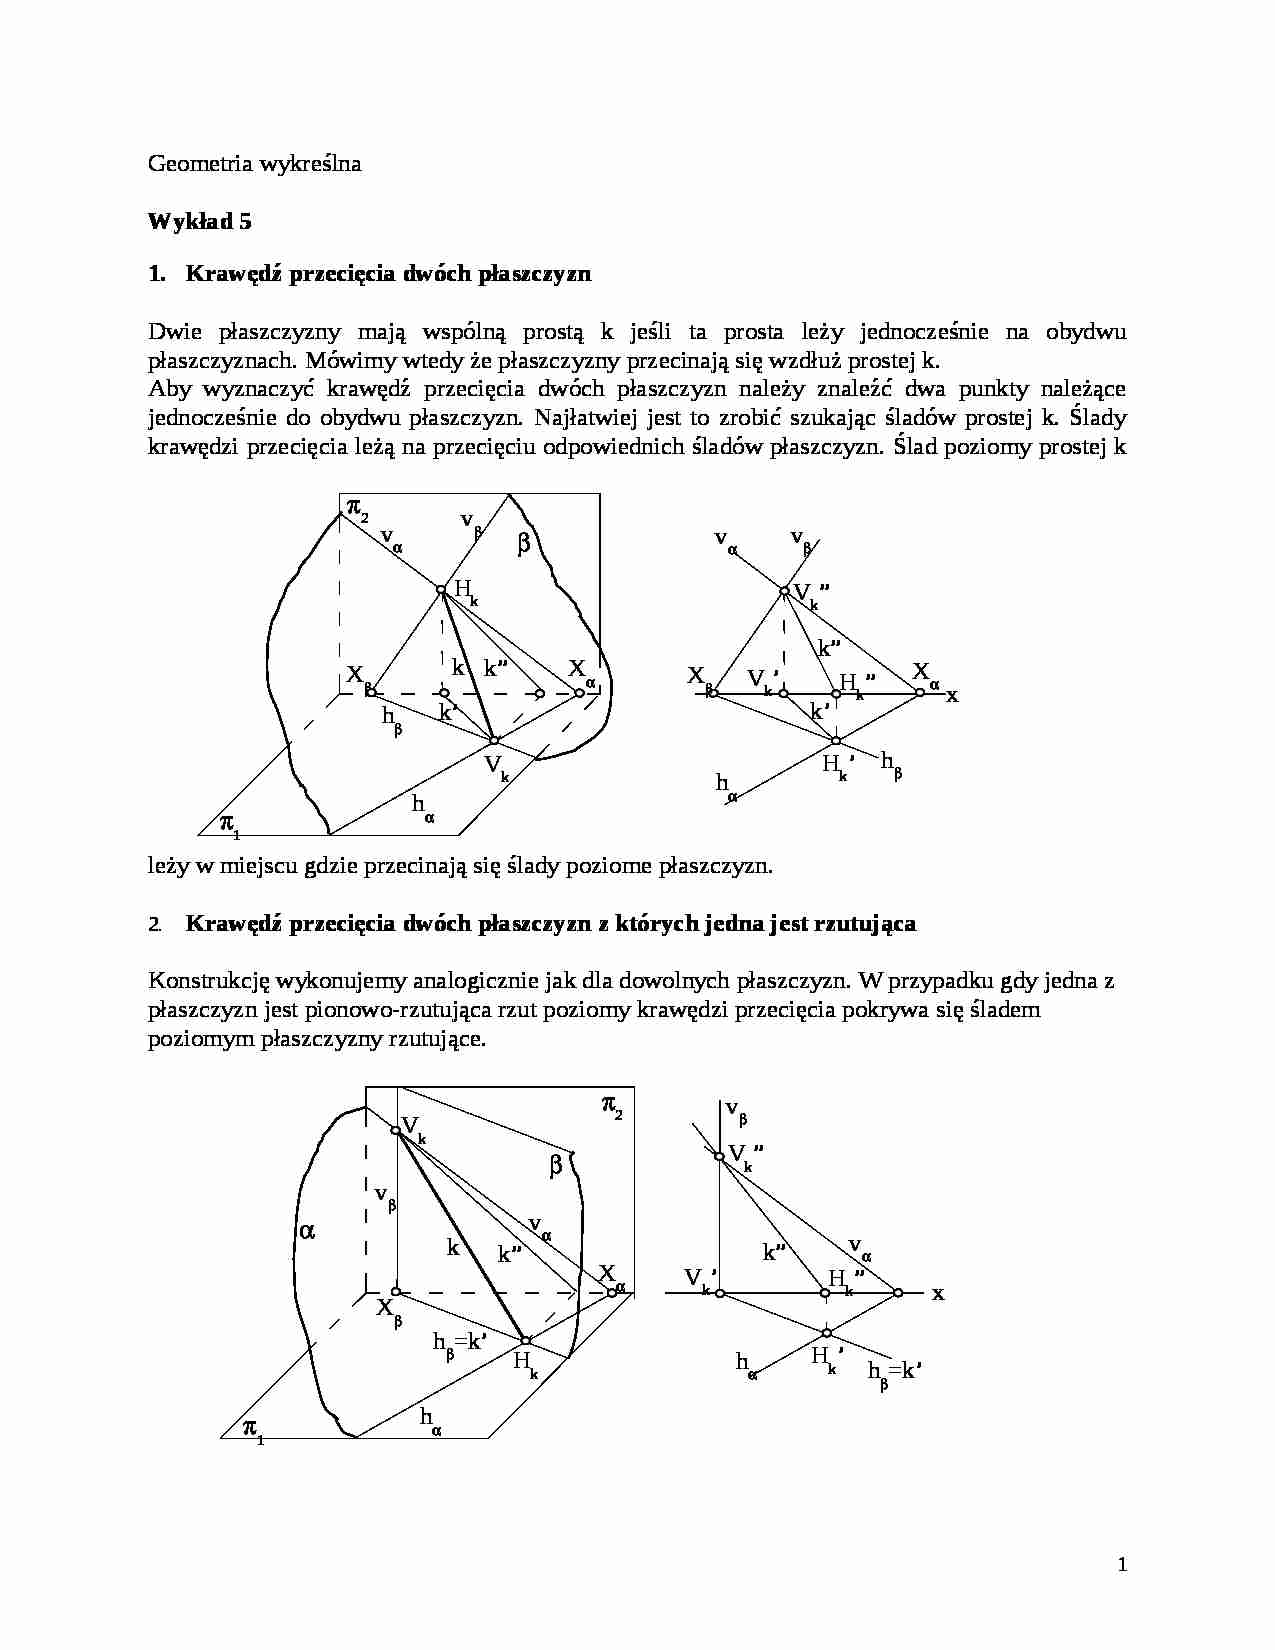 Geometria wykreślna - Wykład 5 - strona 1